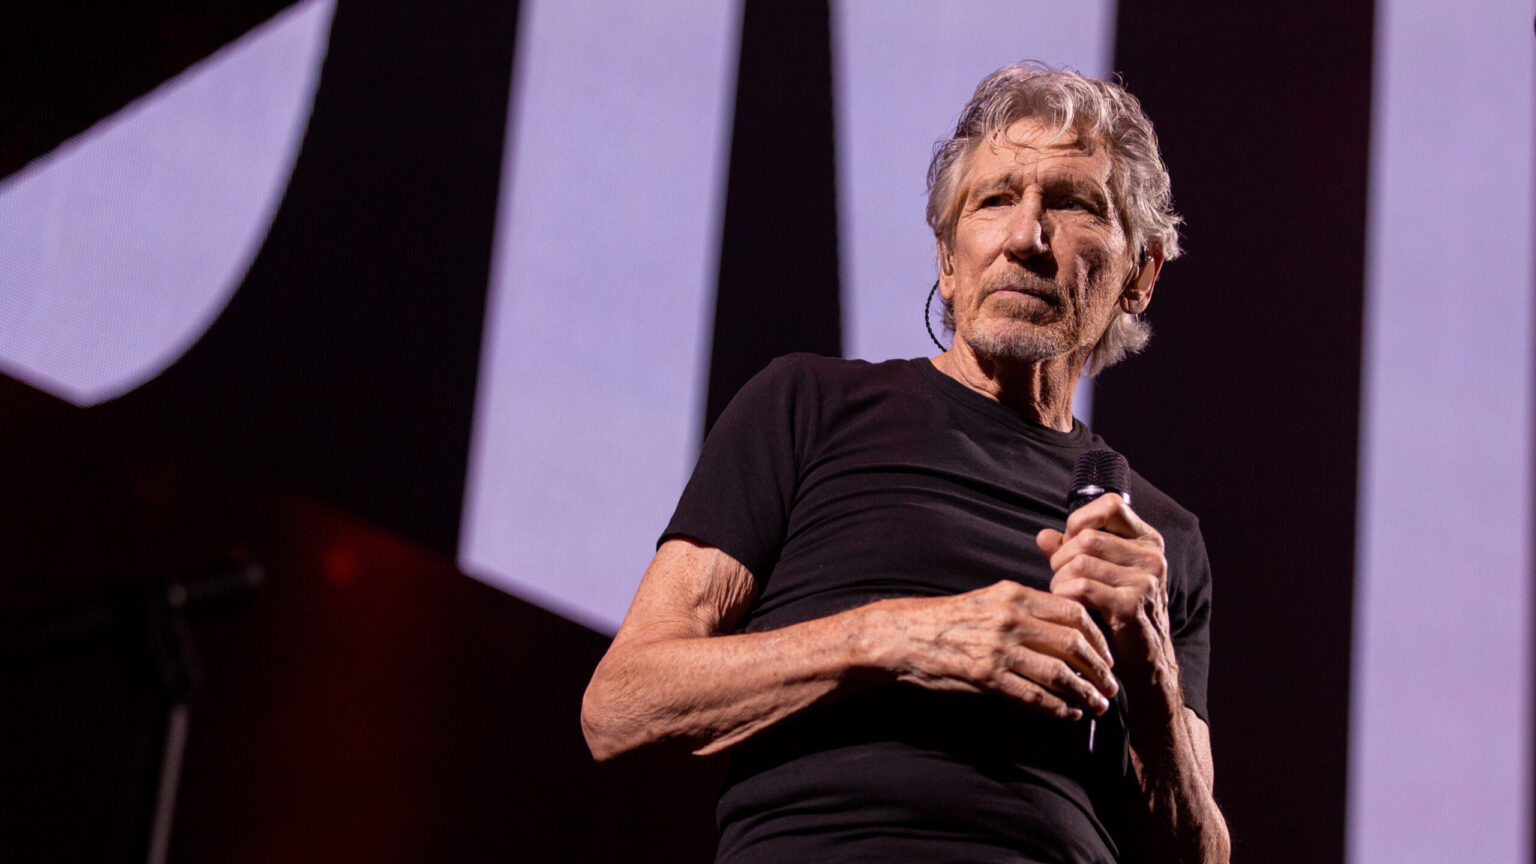 El cantante Roger Waters afirma que Rusia ha sido provocada para invadir Ucrania